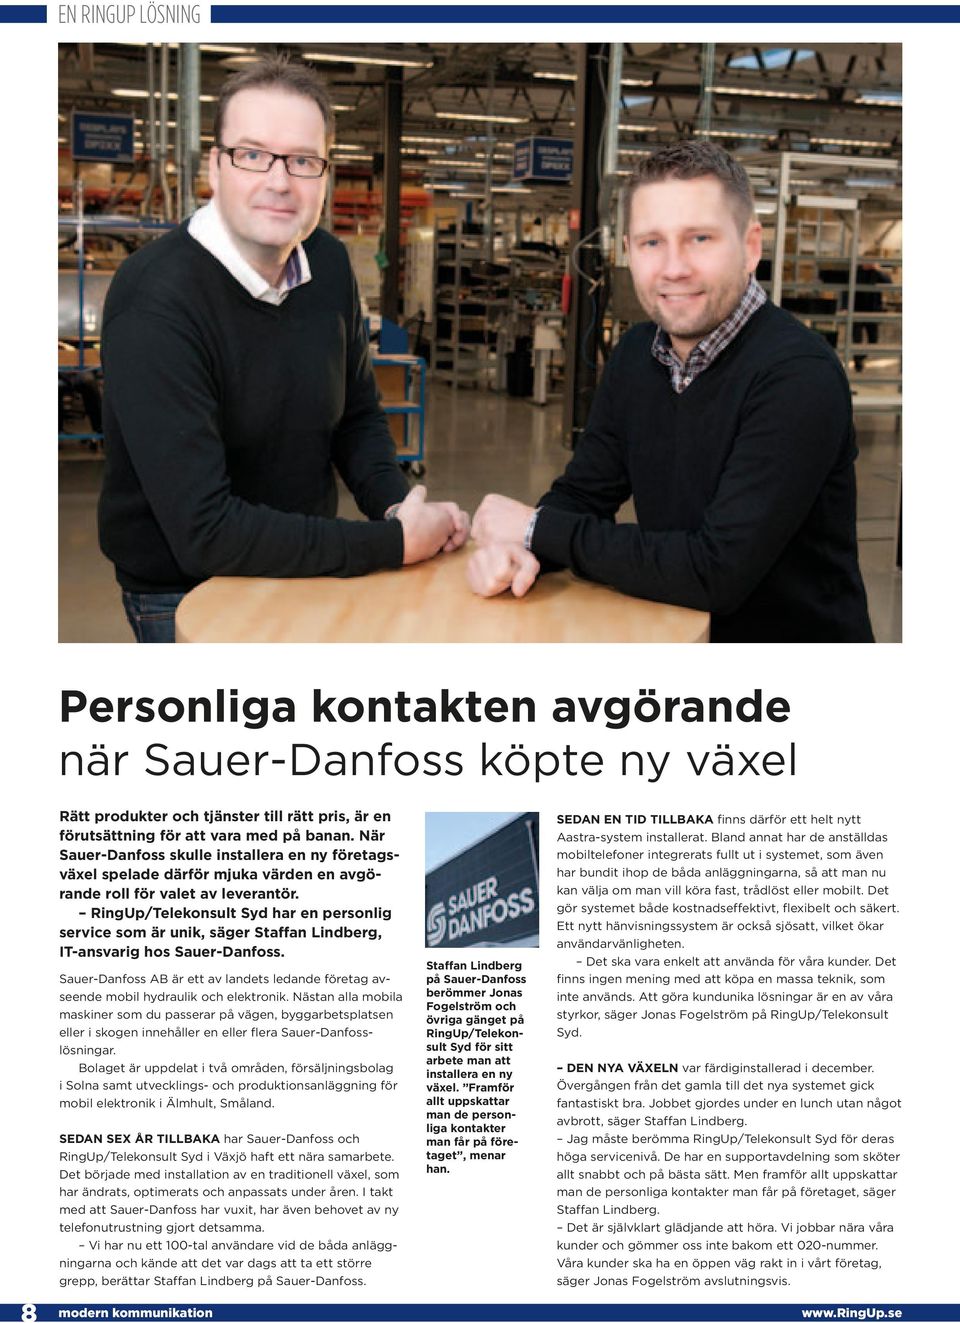 RingUp/Telekonsult Syd har en personlig service som är unik, säger Staffan Lindberg, IT-ansvarig hos Sauer-Danfoss.